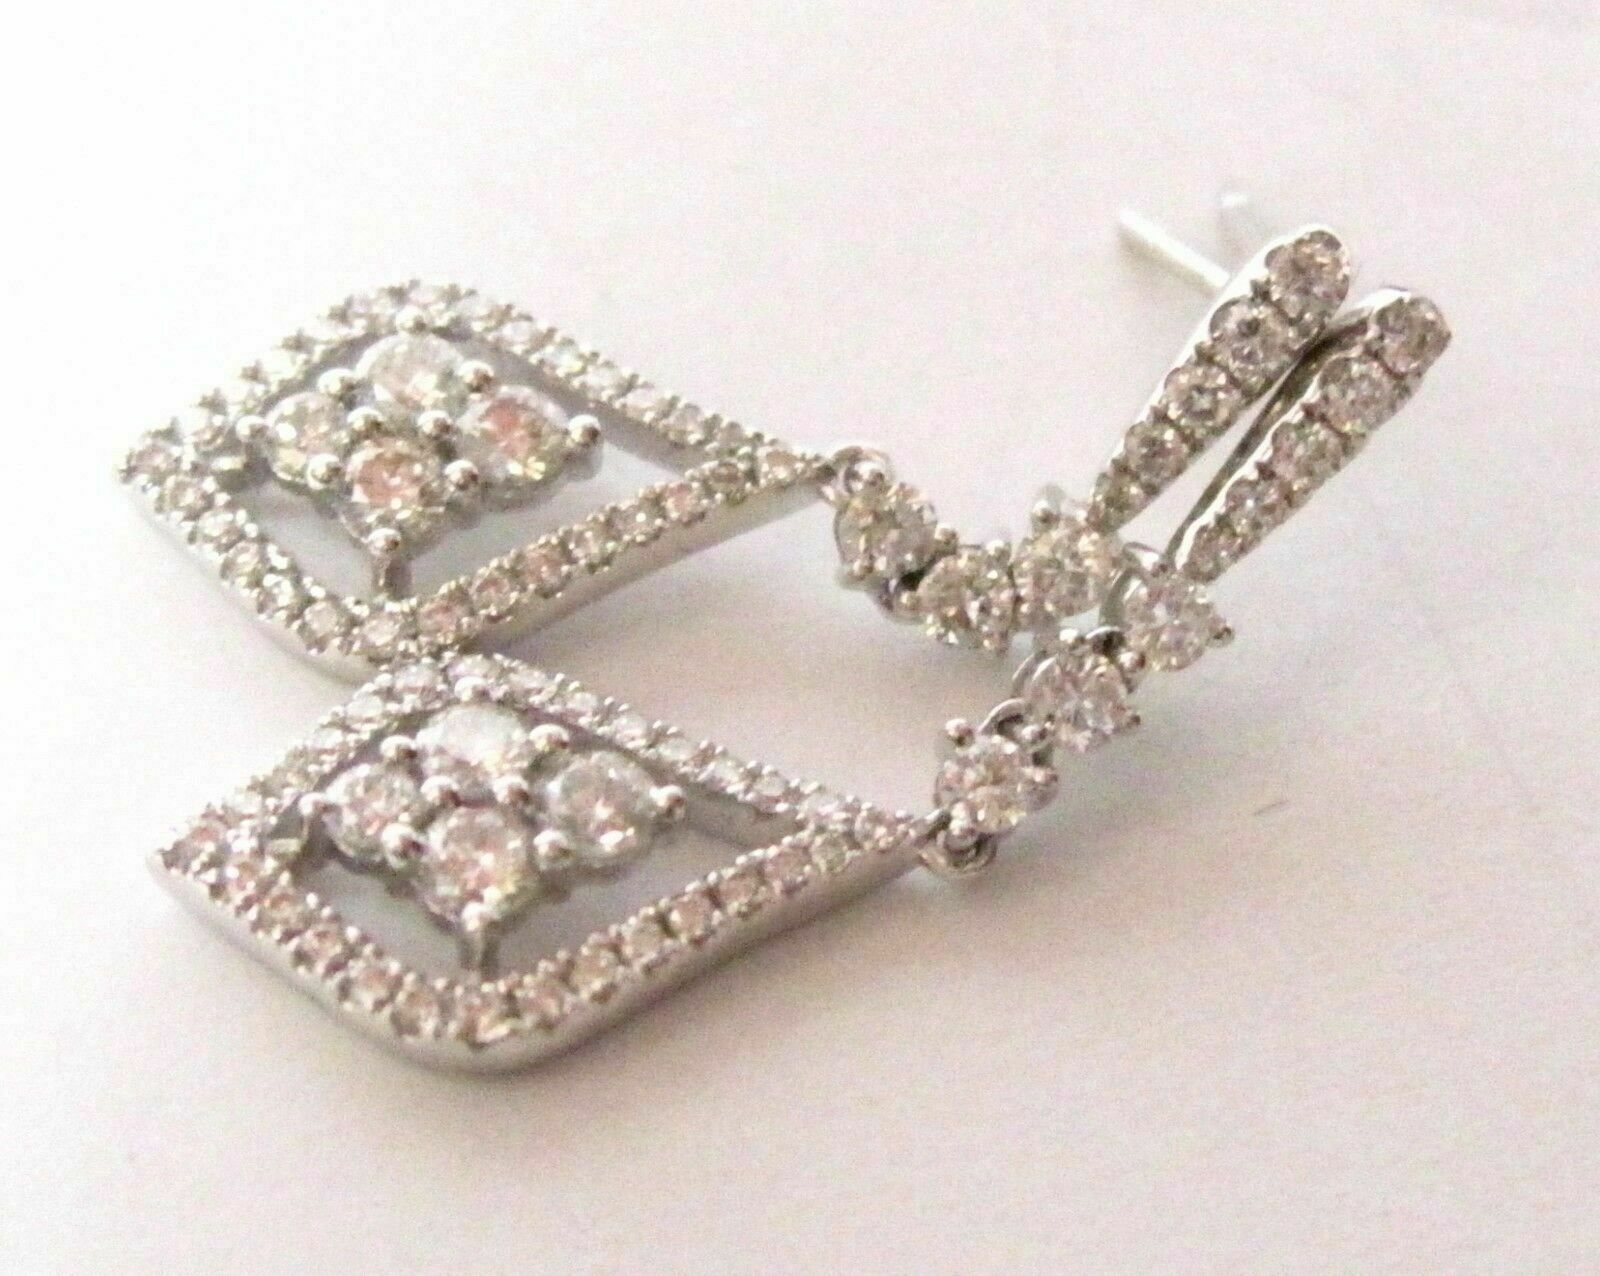 Round Brilliant Diamond Marquise Shape Dangling Earrings G VS2 18k White Gold